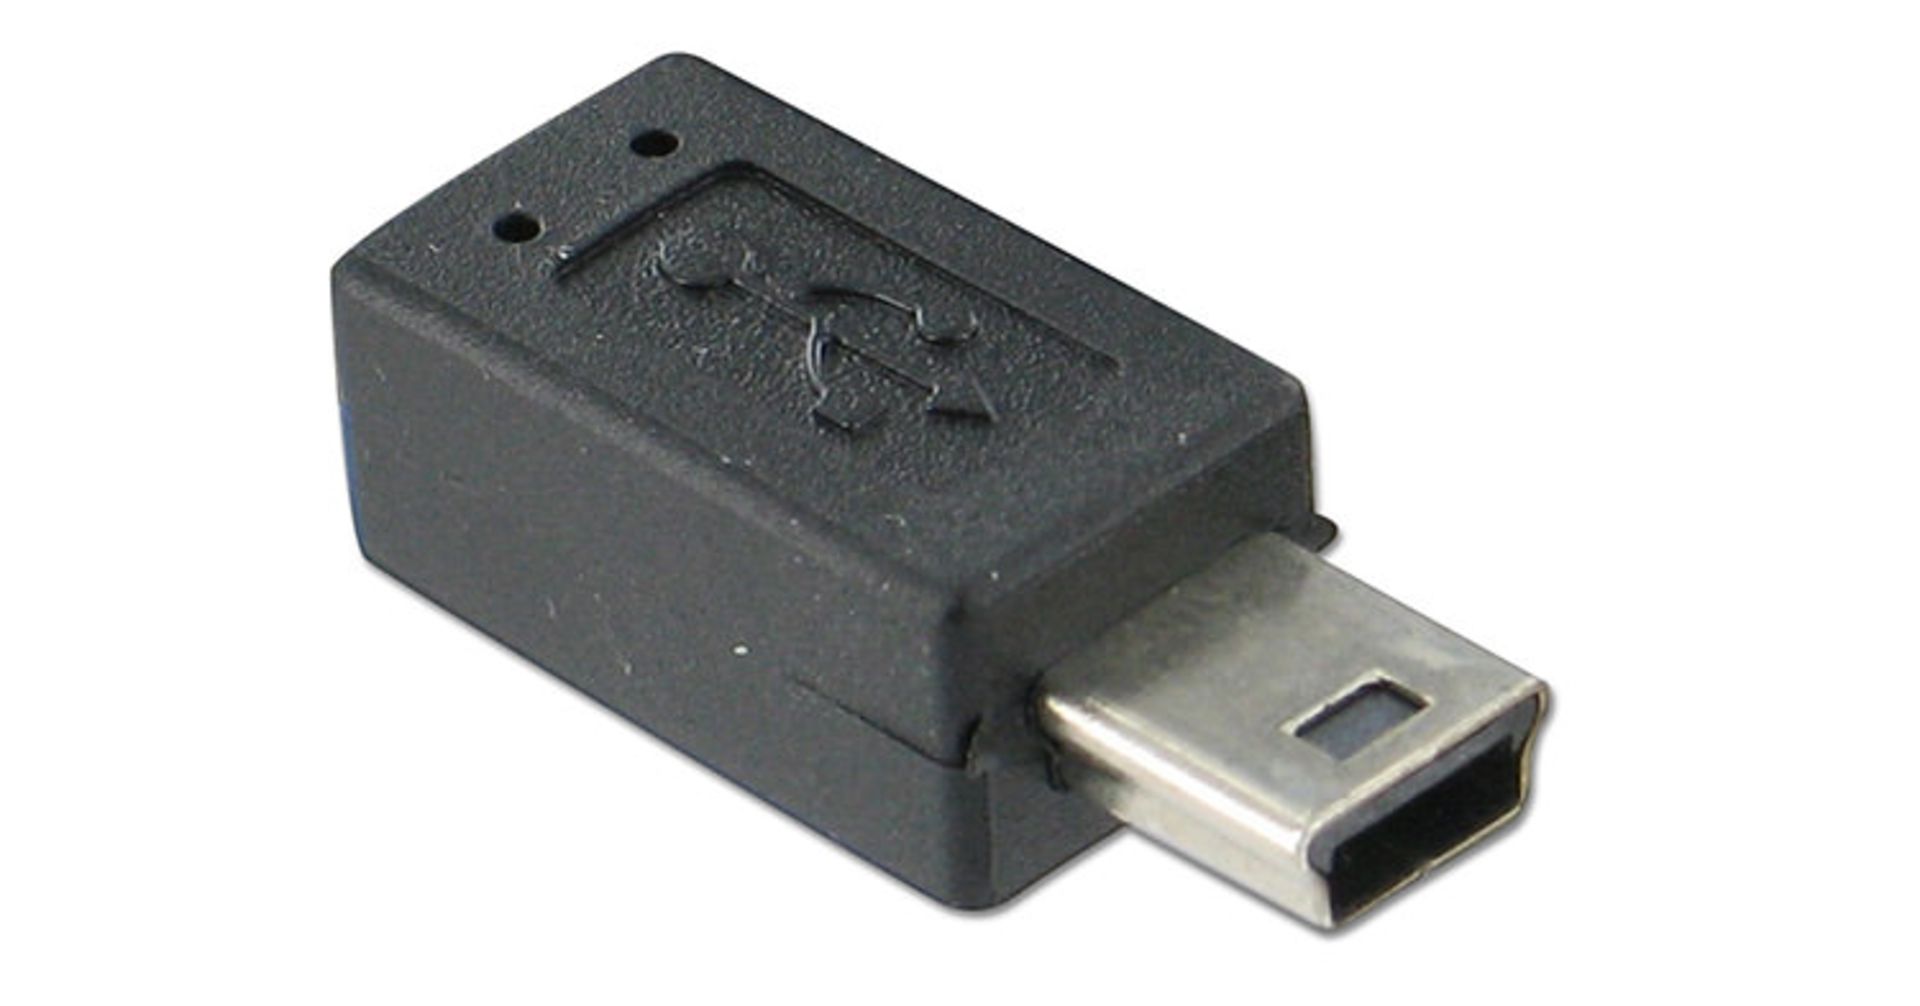 مرجع متخصصين ايران ميني يو اس بي / Mini USB